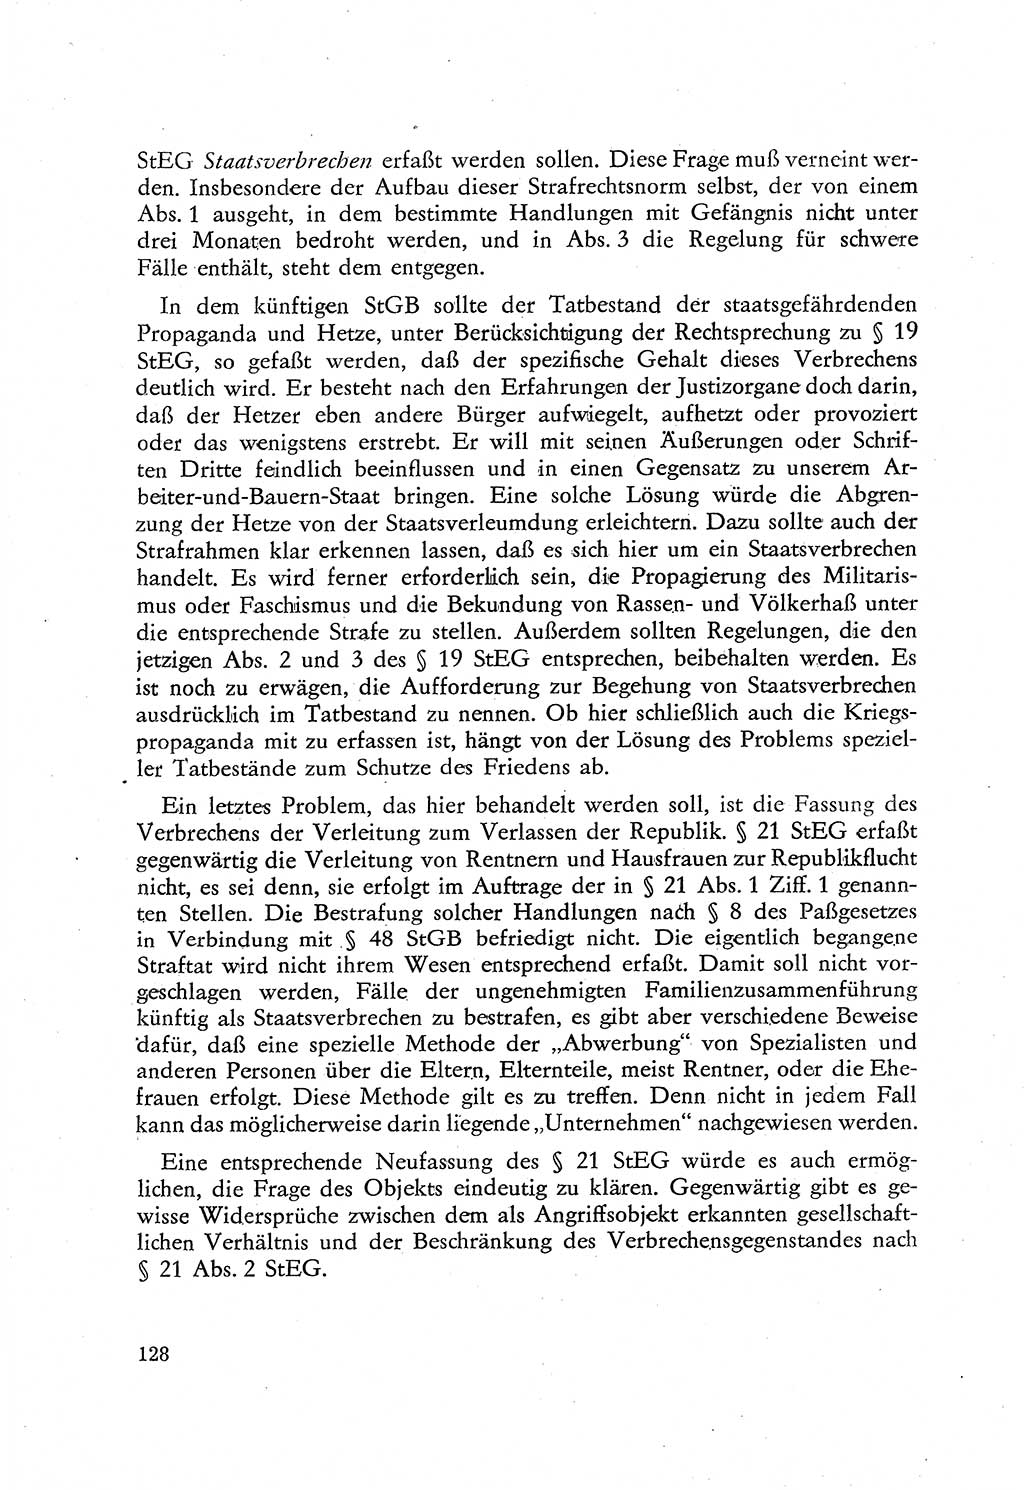 Beiträge zum Strafrecht [Deutsche Demokratische Republik (DDR)], Staatsverbrechen 1959, Seite 128 (Beitr. Strafr. DDR St.-Verbr. 1959, S. 128)